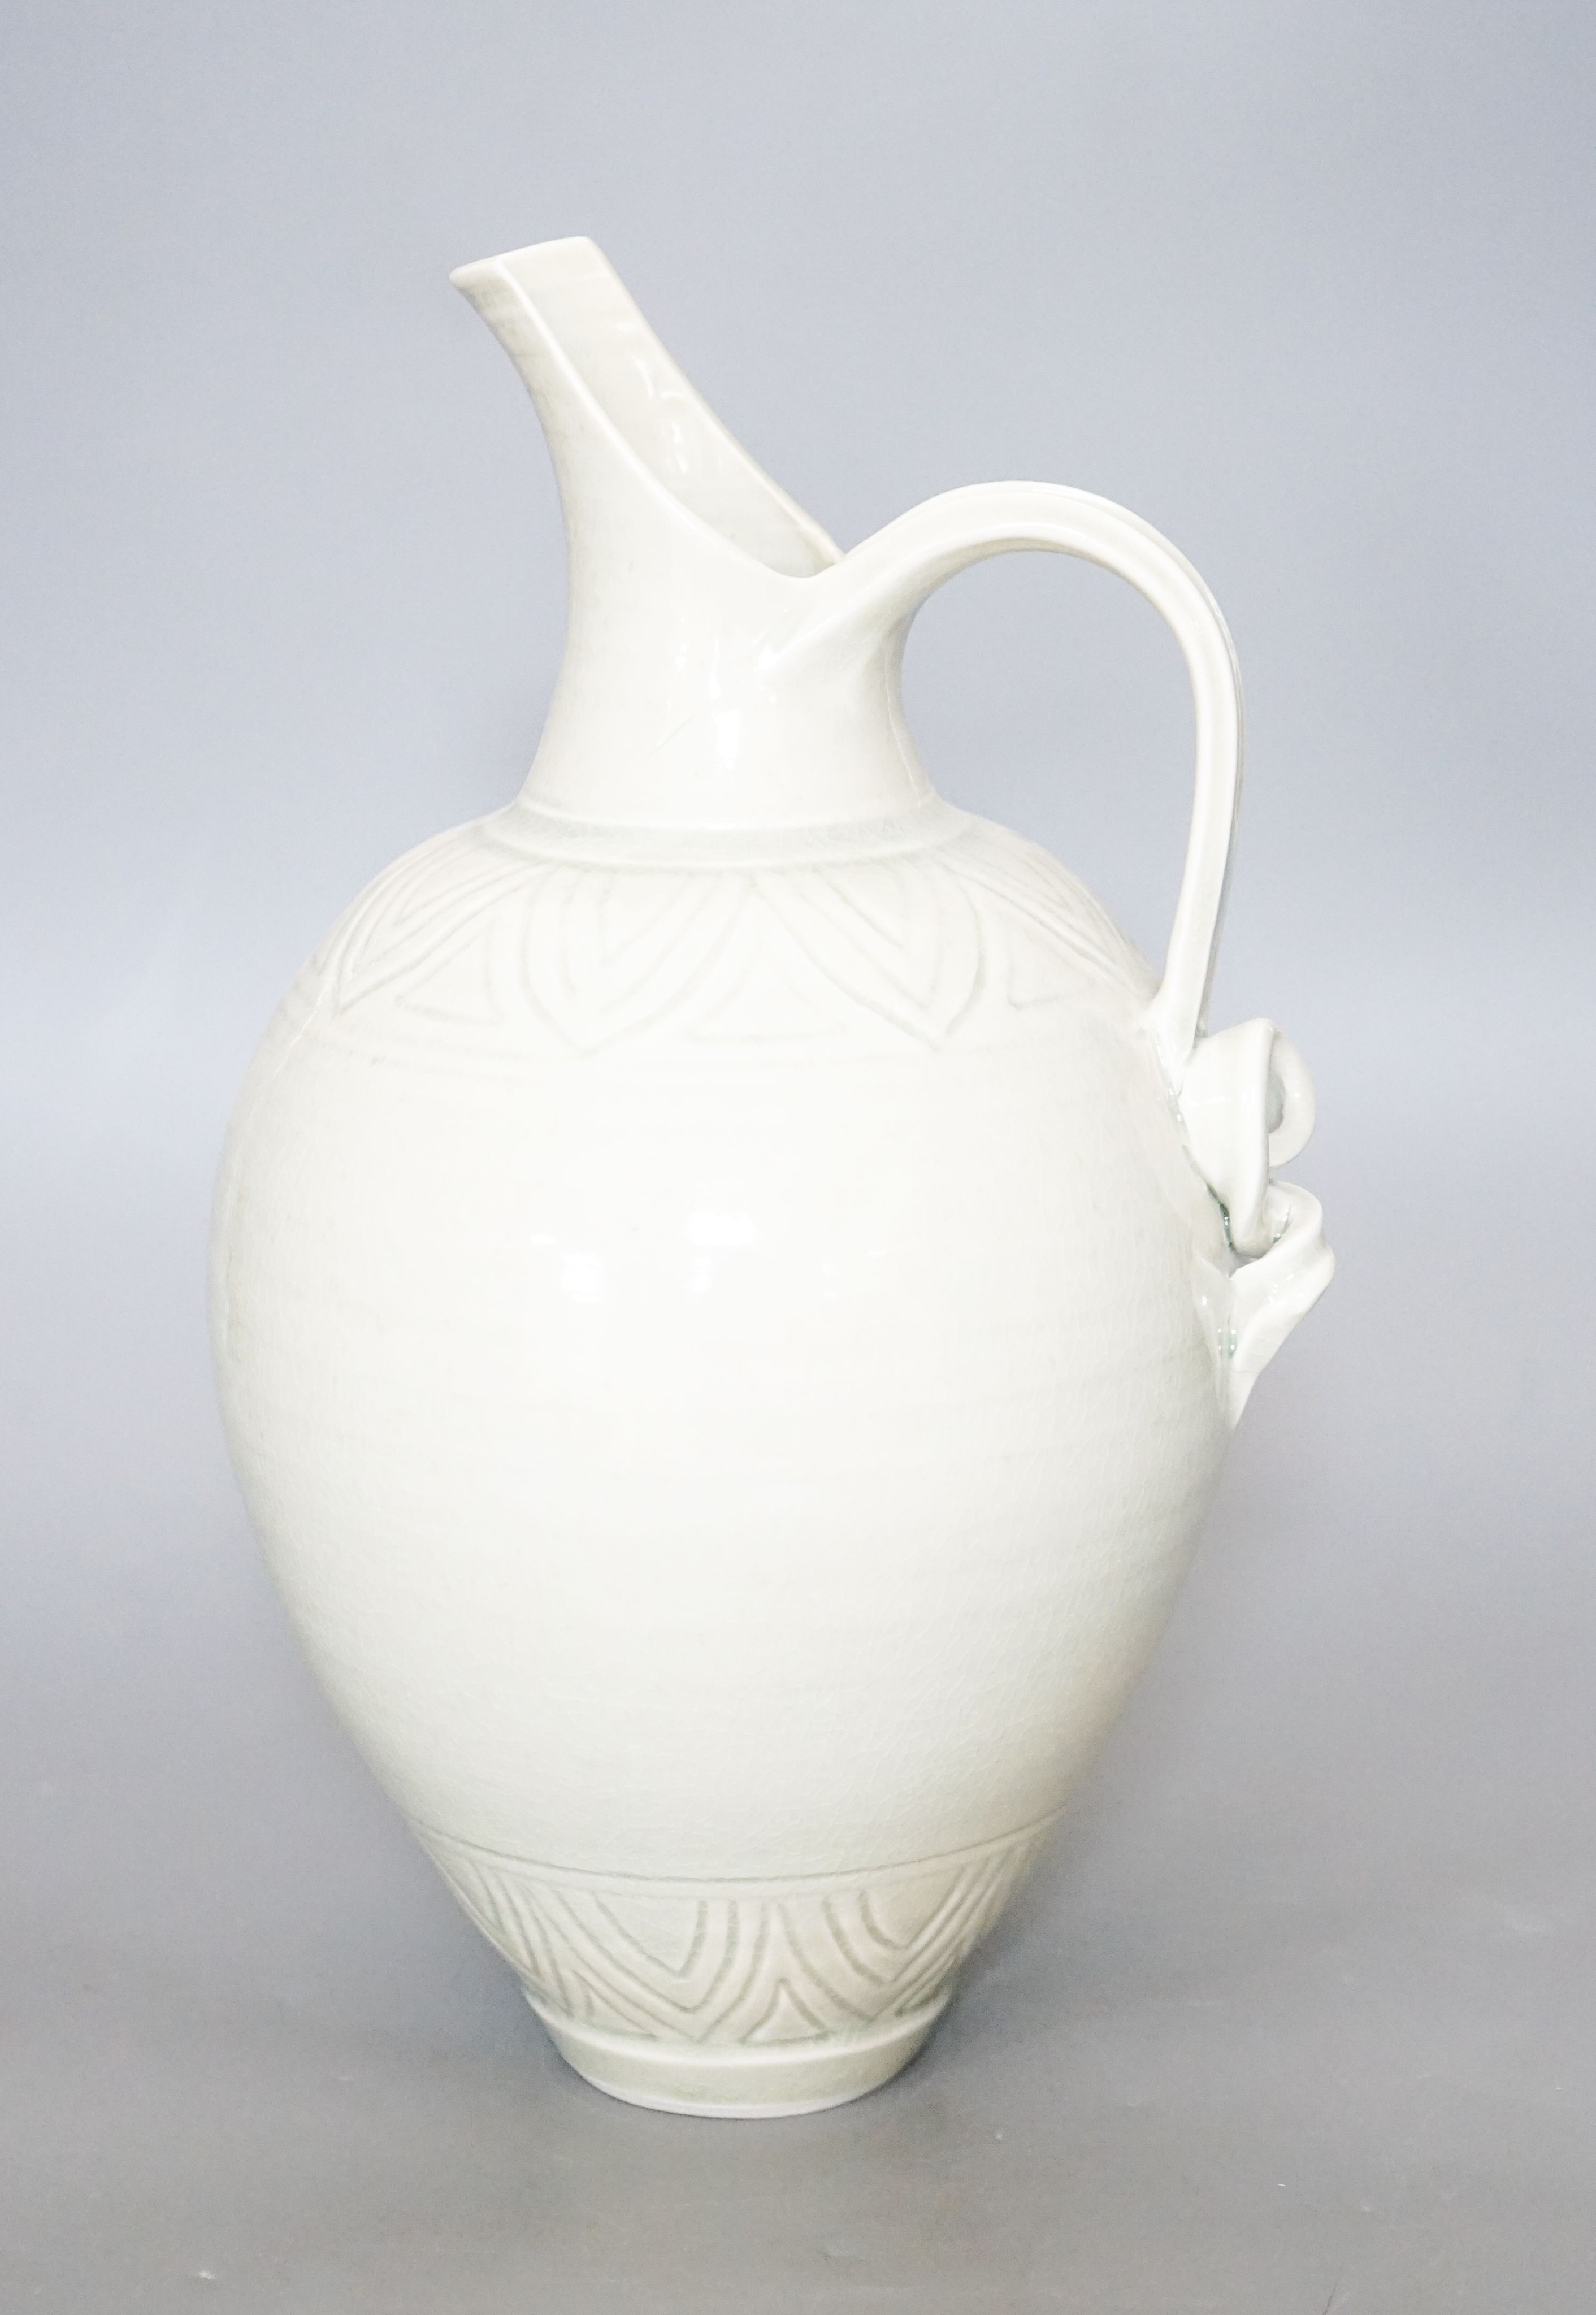 Bridget Drakeford (b.1946), a celadon glazed porcelain jug 30cm